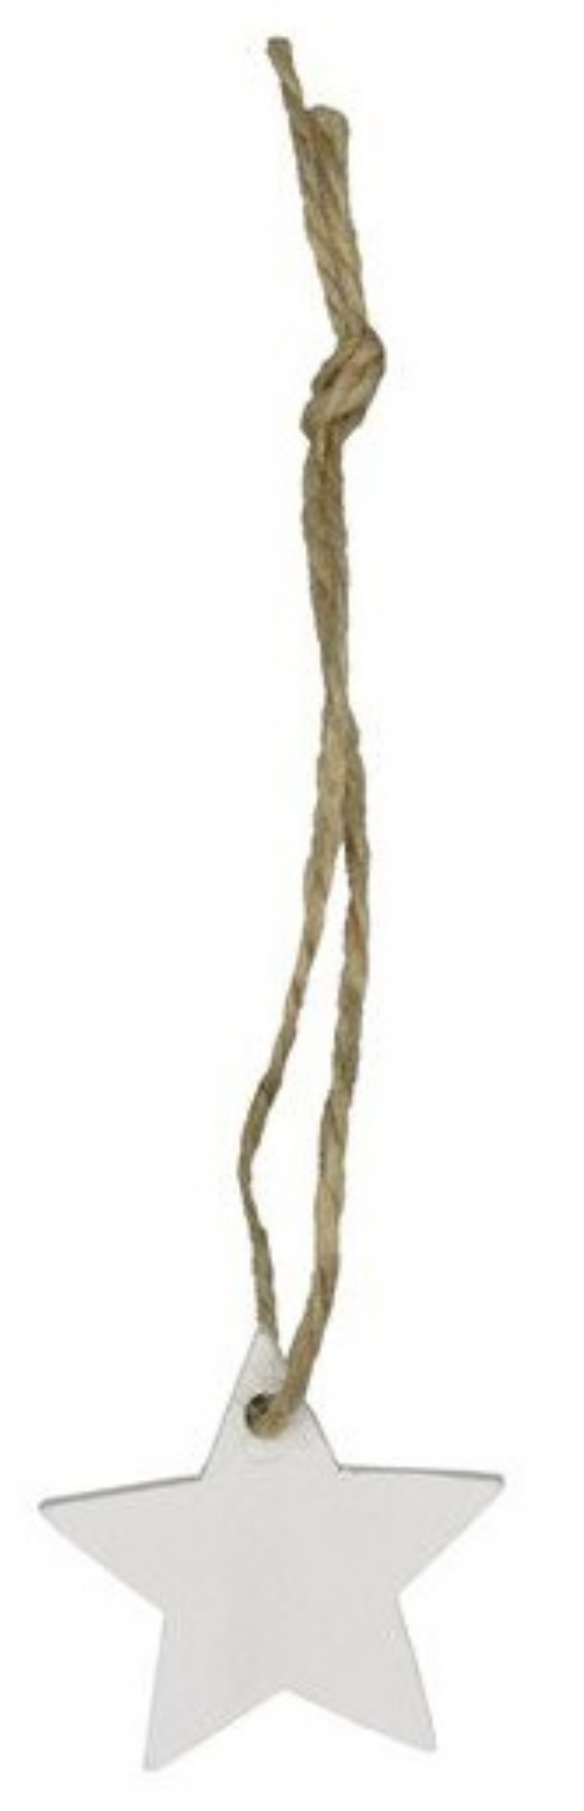 Houten hanger met koord, wit, 3,5 cm, sterretje